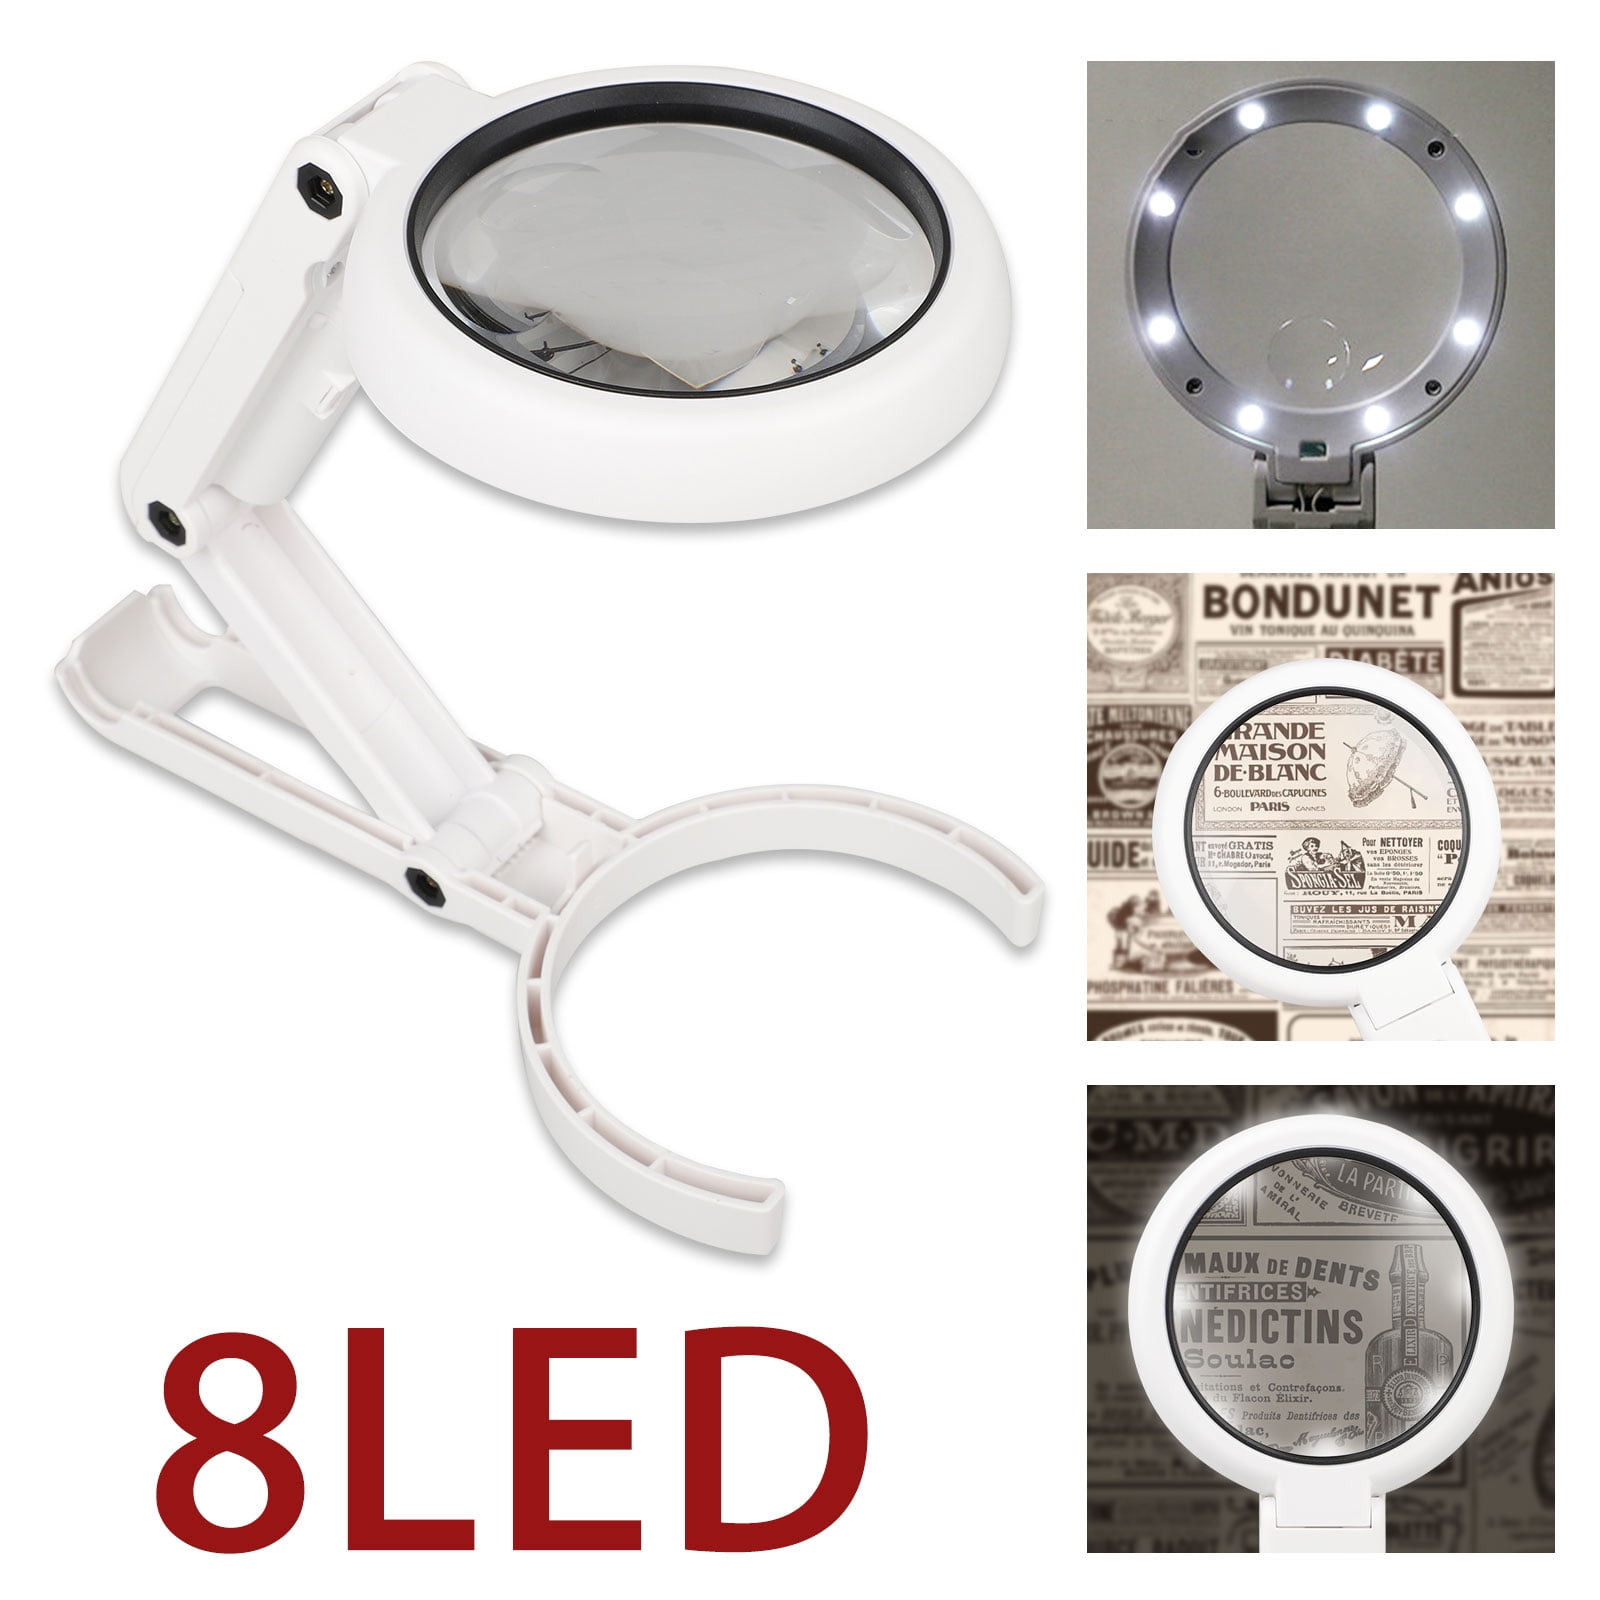 40X LED Illuminated Jeweler Loupe Wide Range Scope Eye Magnifying